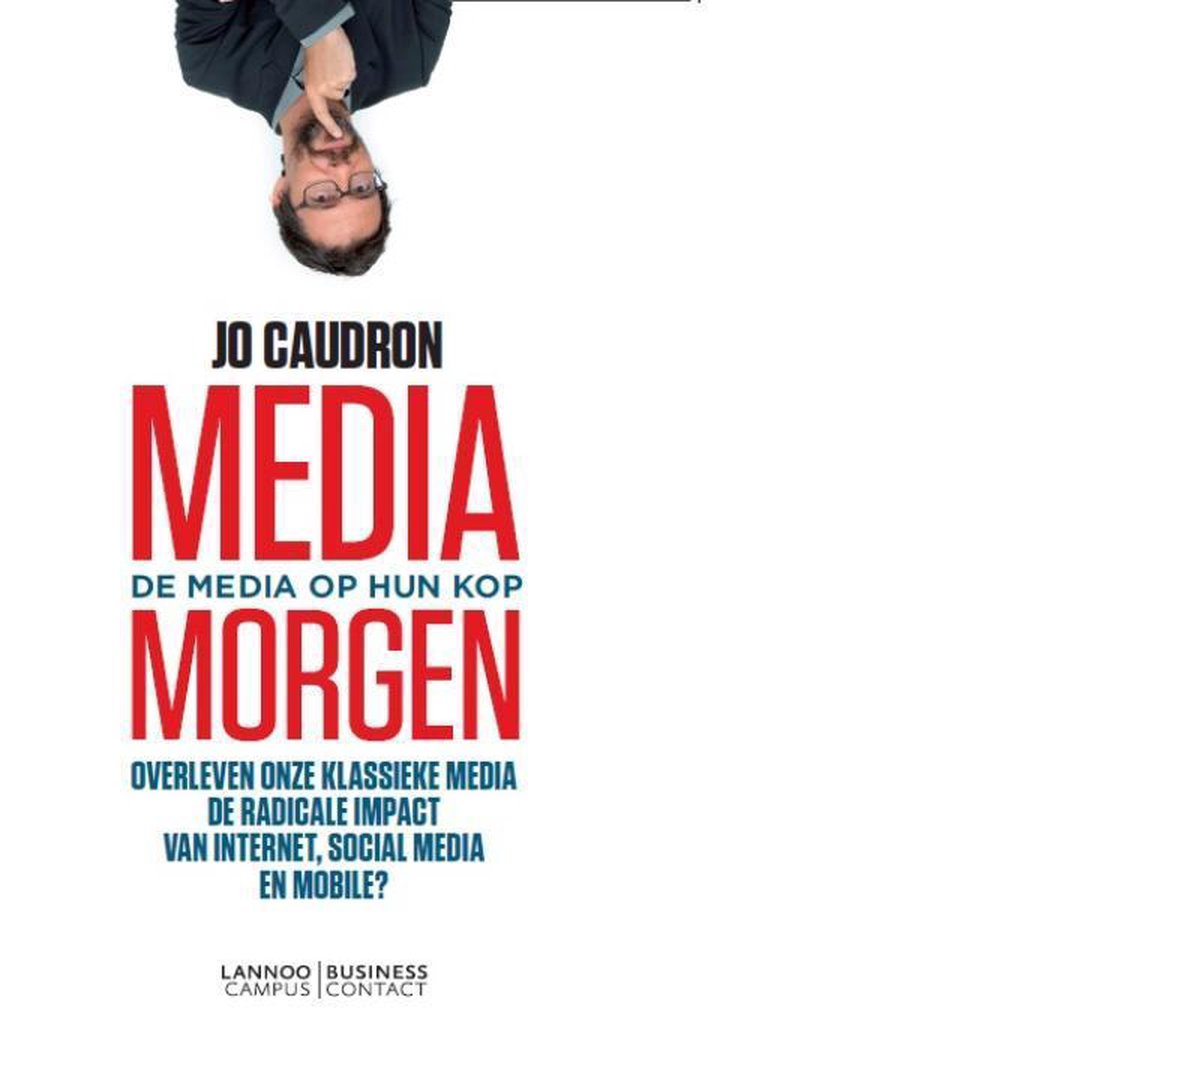 Media morgen - de media op zijn kop - Jo Caudron